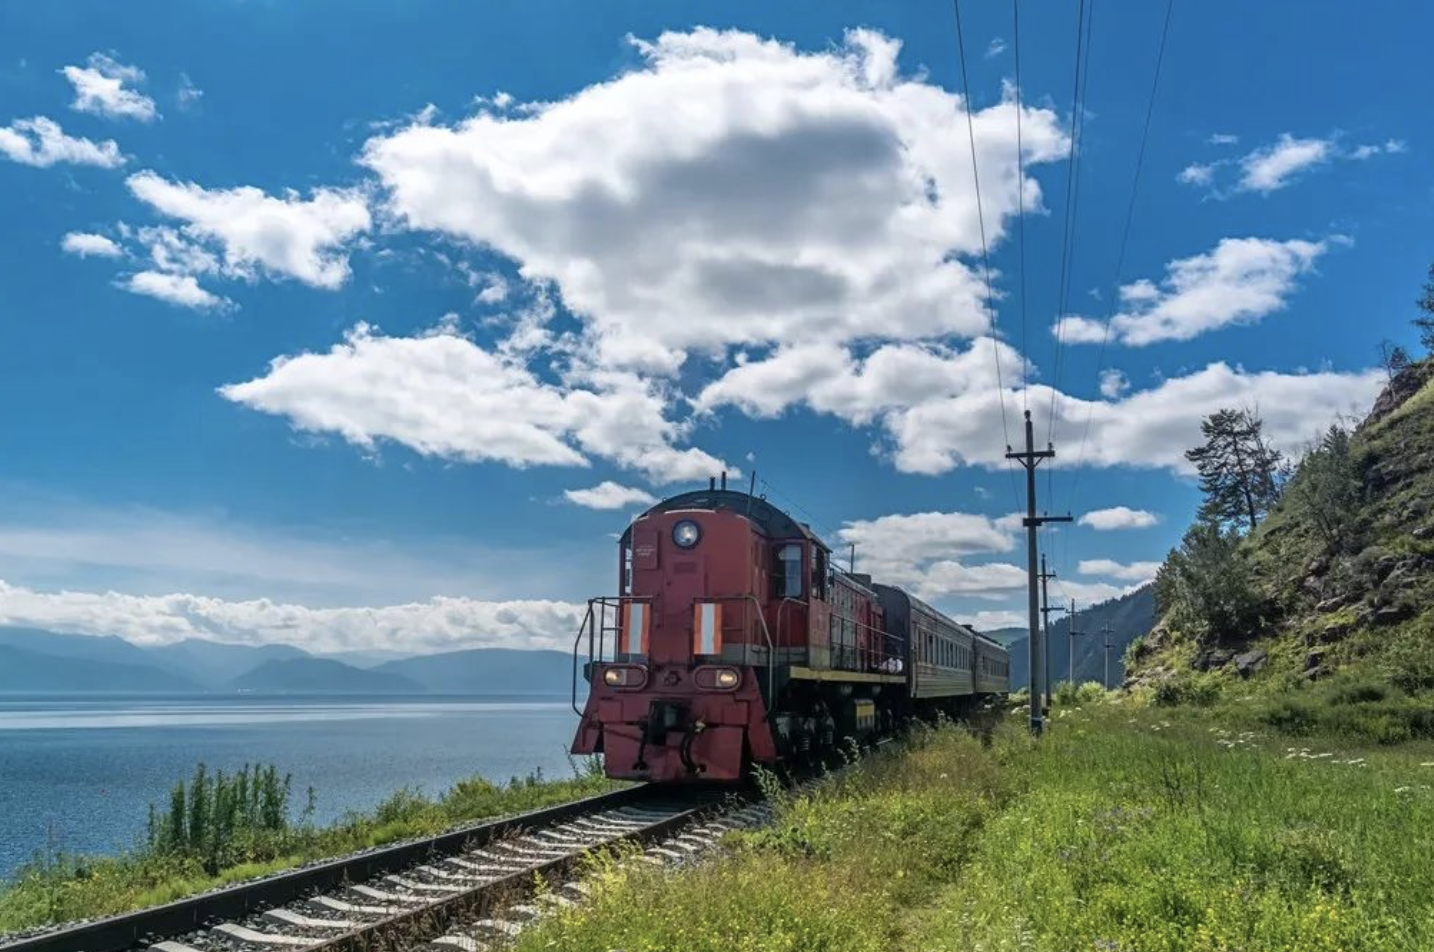 在新疆坐火车，窗外的风景一定很美吧～ 前天在库俄铁路（红山石林段）抓拍到的一辆运煤的货运列车，正在穿越浓浓的秋色和壮观的雅丹地貌。#火车看中国# - Thomas看看世界